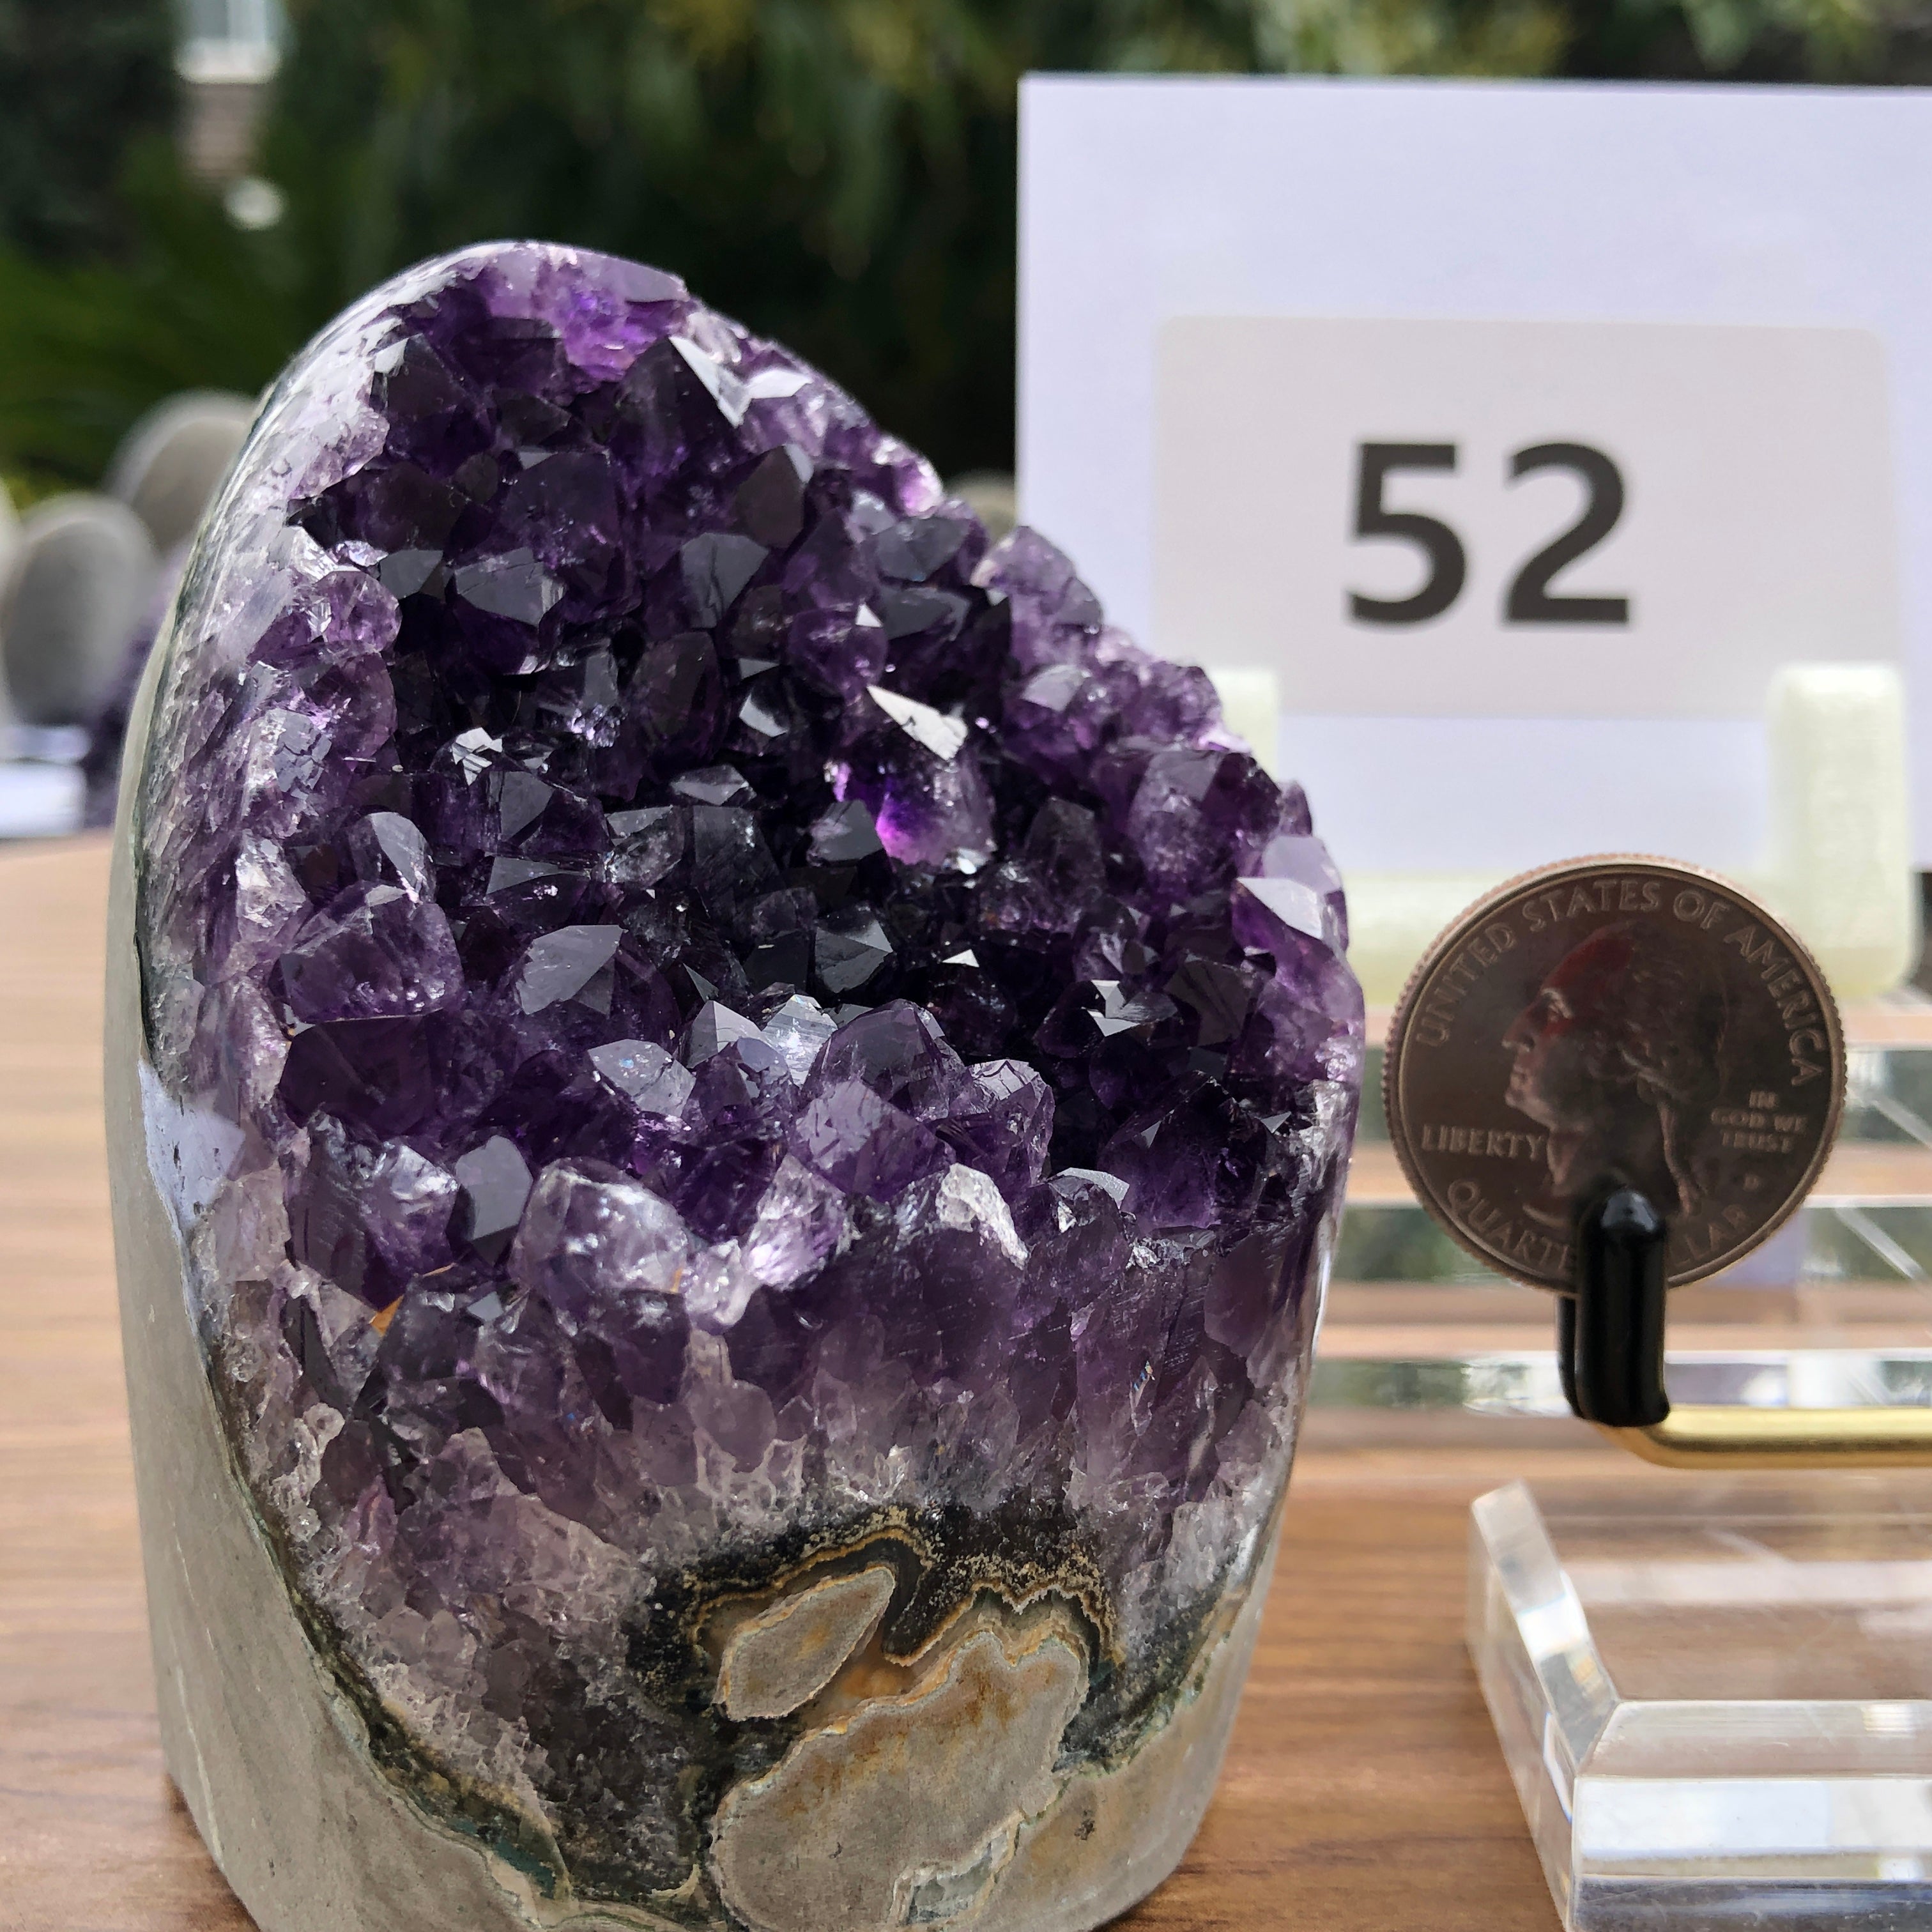 Purple Amethyst Geode  from Uruguay